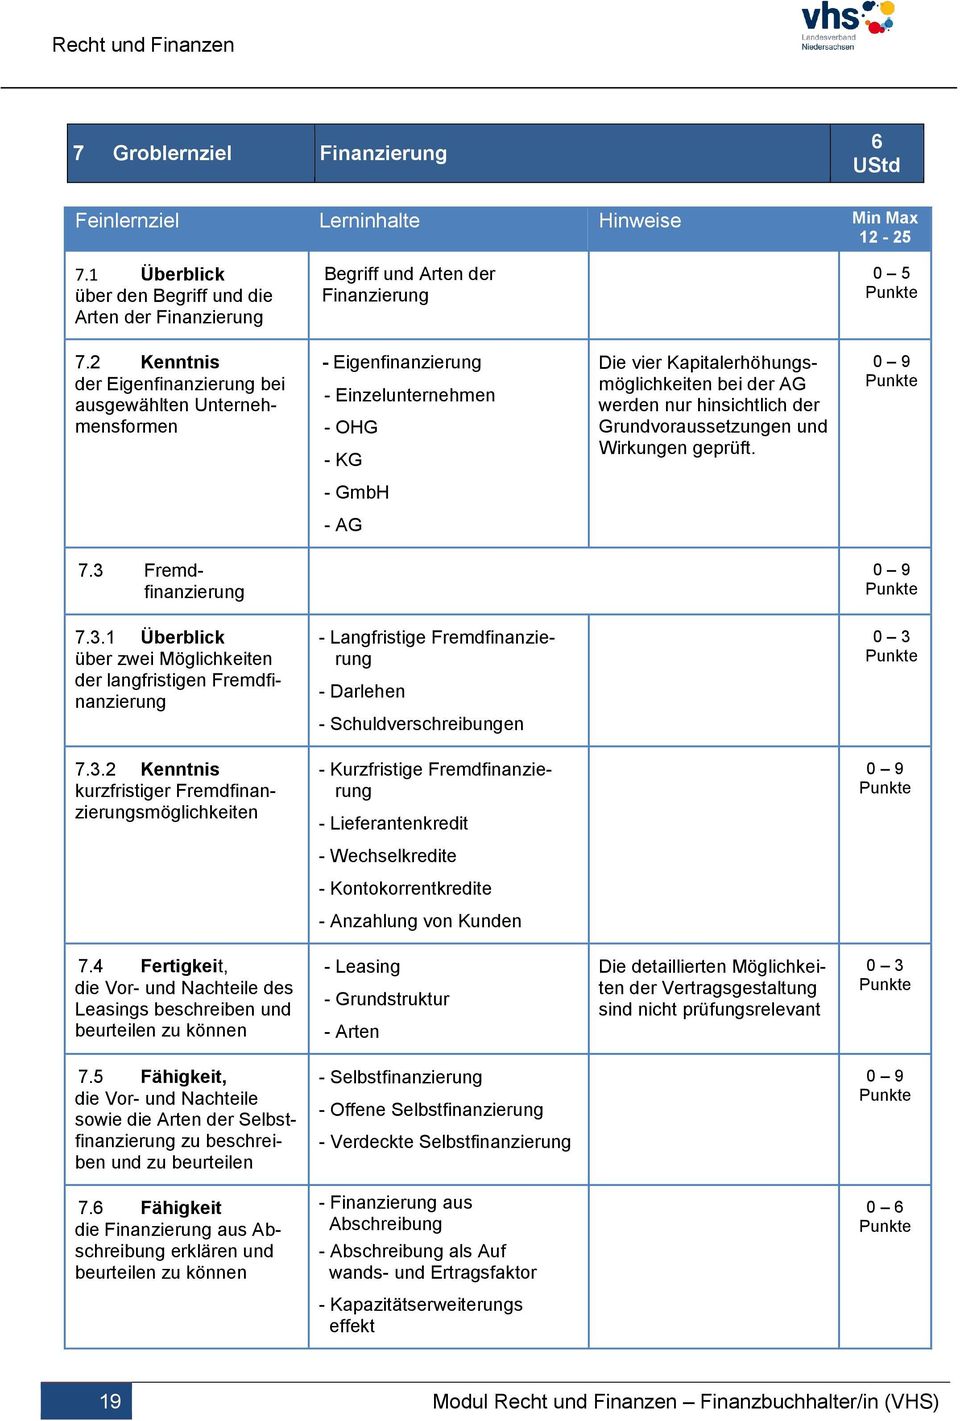 Grundvoraussetzungen und Wirkungen geprüft. 0 9 - GmbH - AG 7.3 